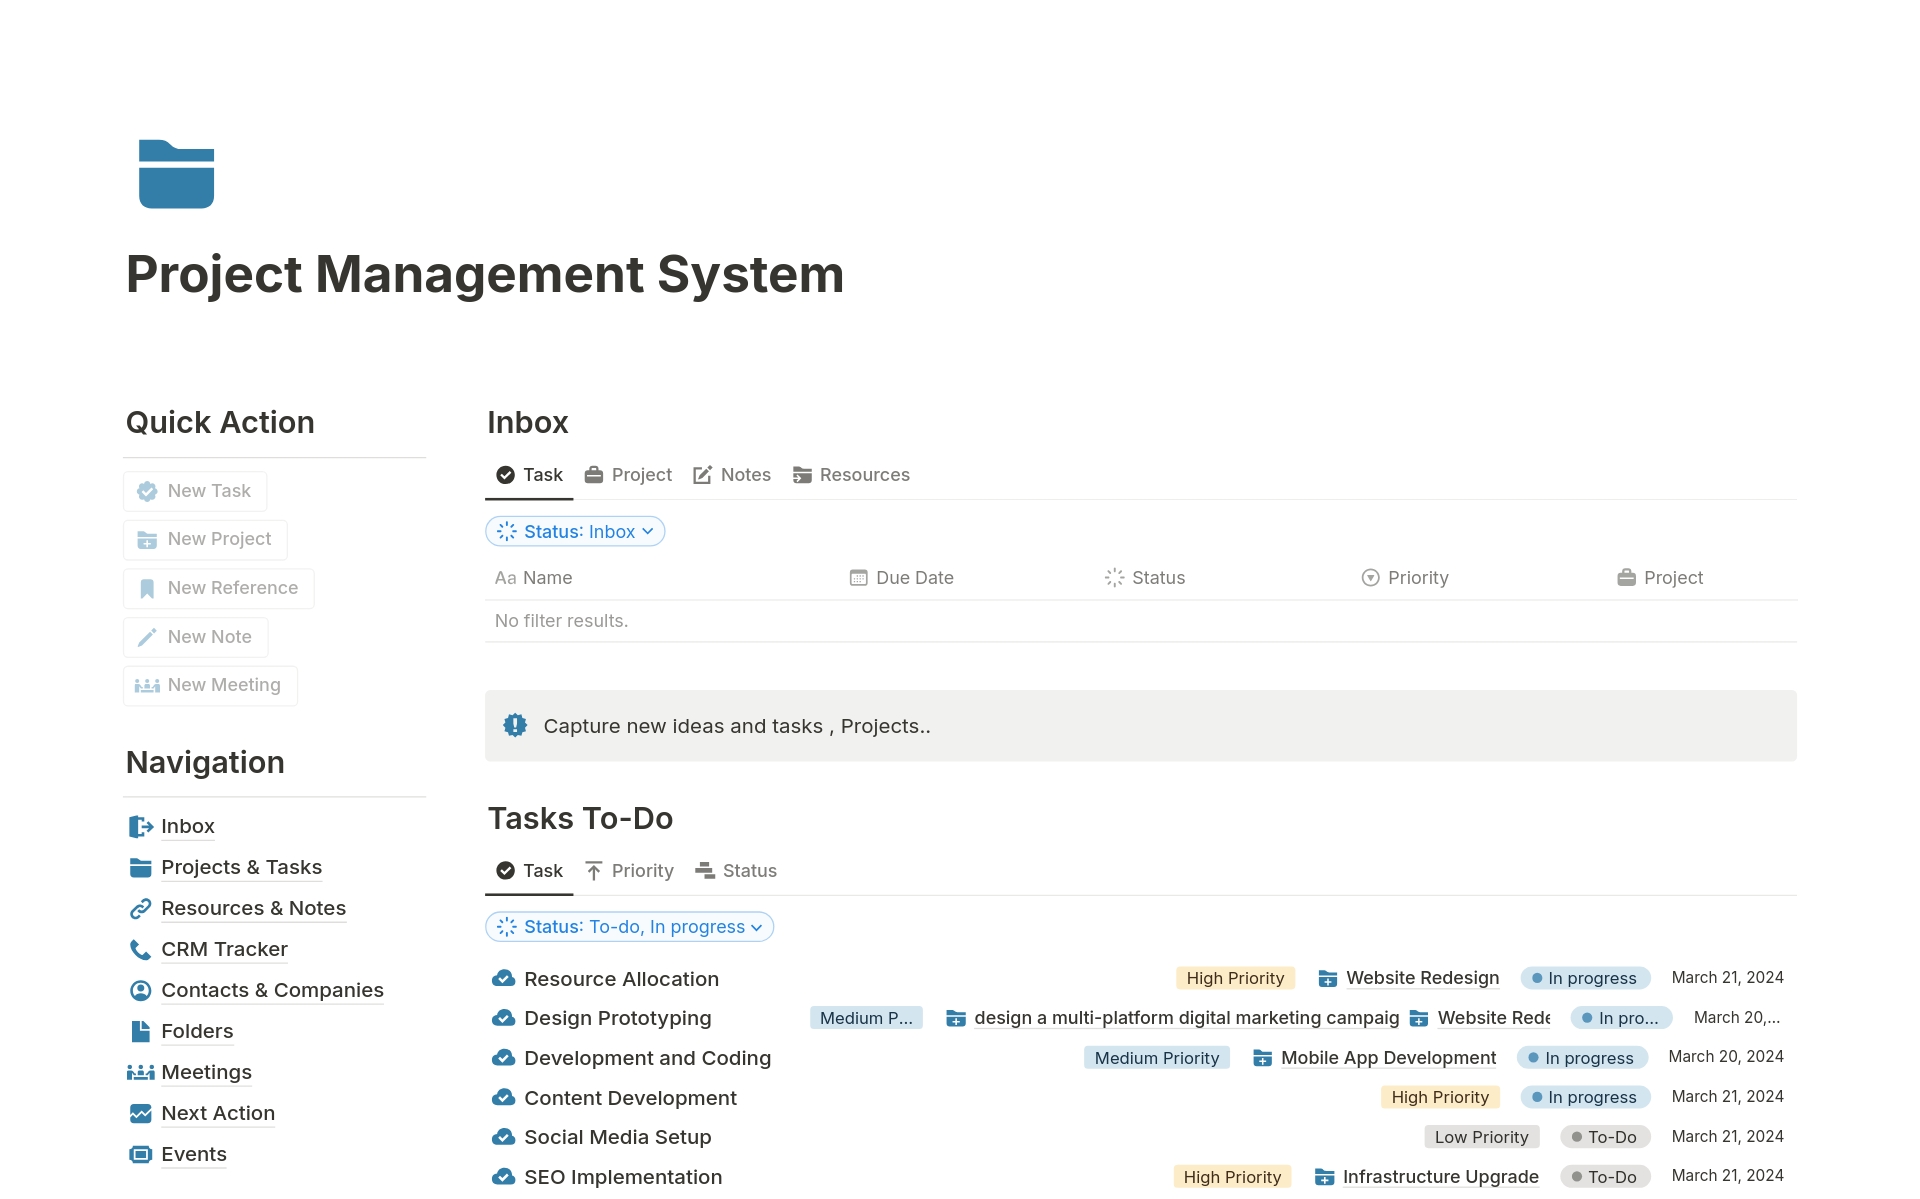 Aperçu du modèle de Project Management System 